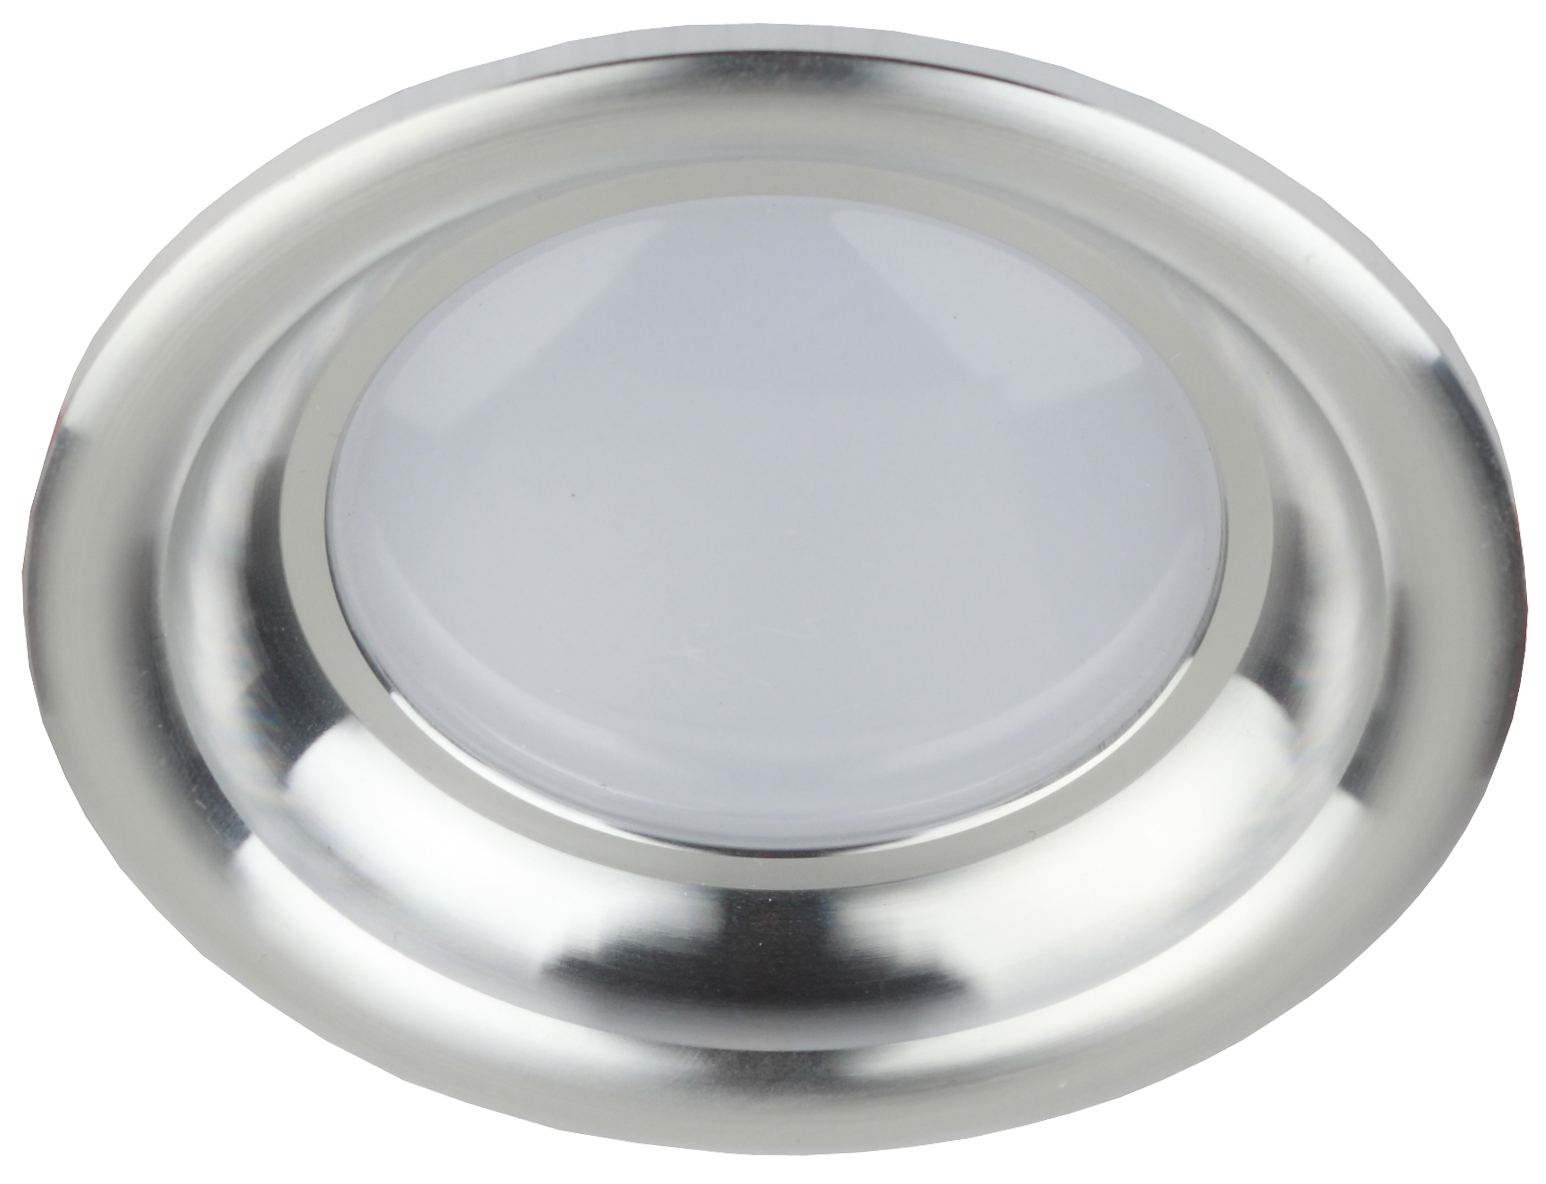 KL LED 17-7 SL Светильник ЭРА светодиодный круглый "тарелка" 7W 4000K, серебро (40/960)